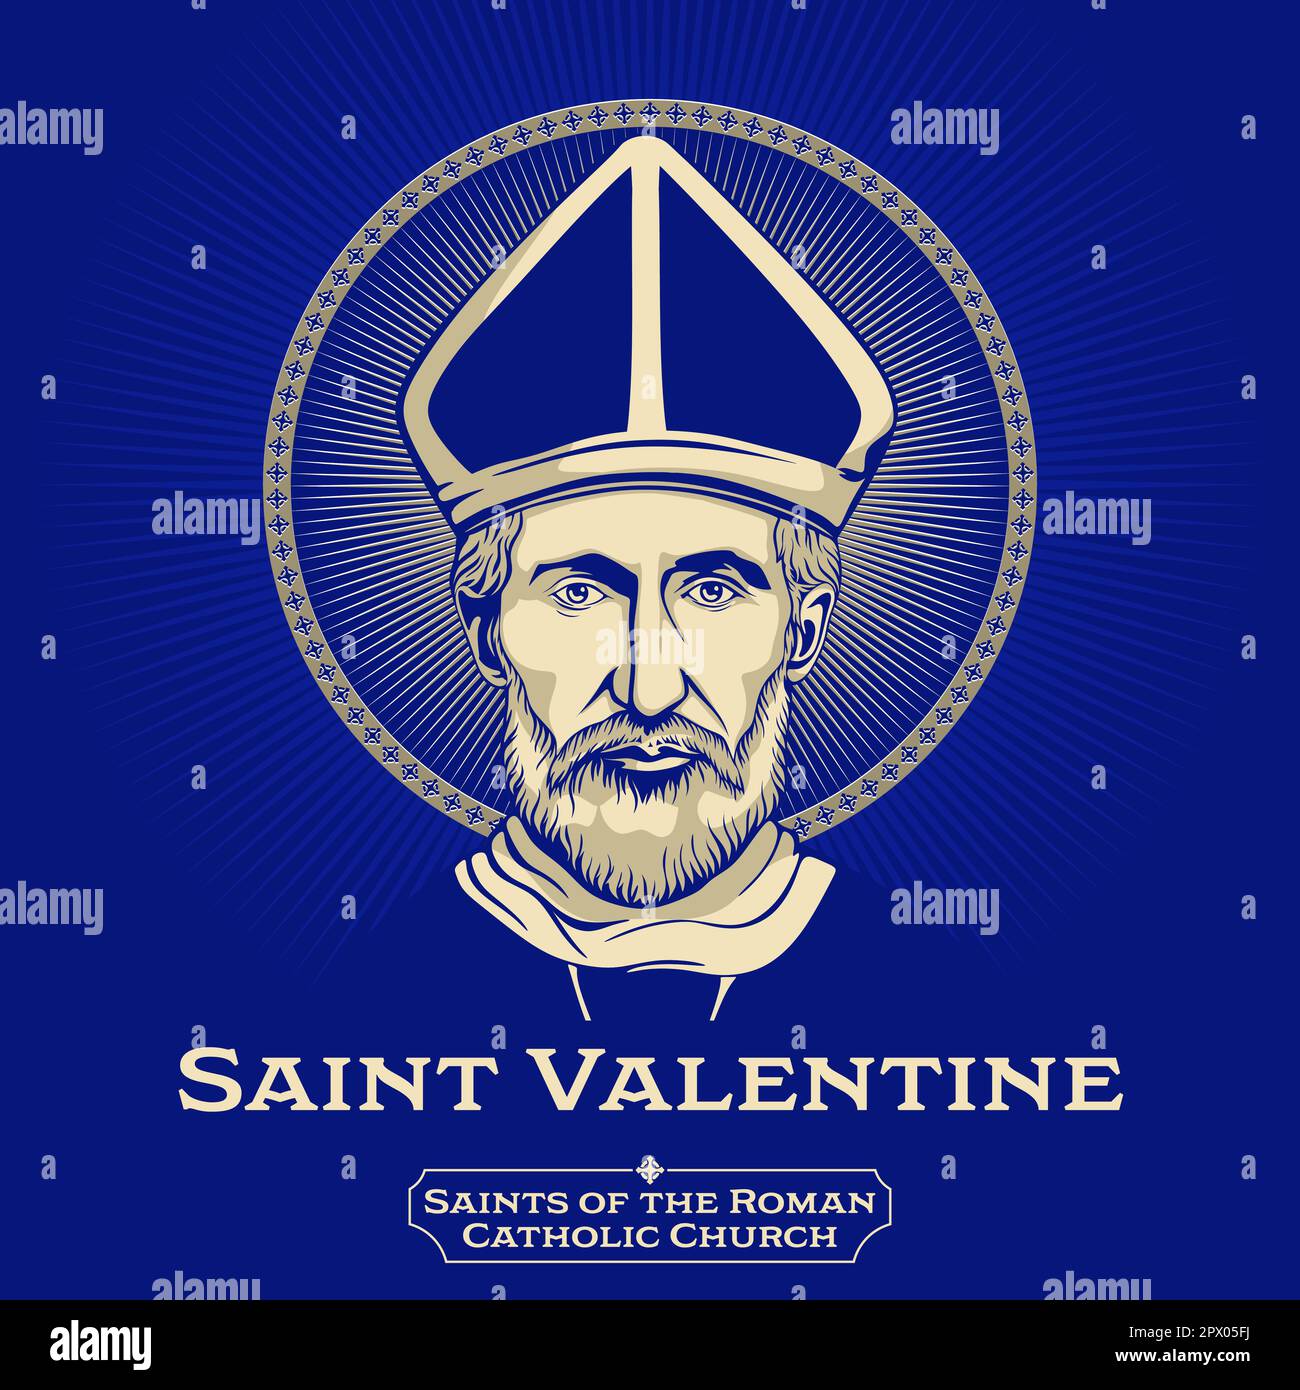 Los santos católicos. San Valentín fue un santo romano del siglo 3rd, conmemorado en el cristianismo occidental el 14 de febrero. Desde la Alta Edad Media Ilustración del Vector